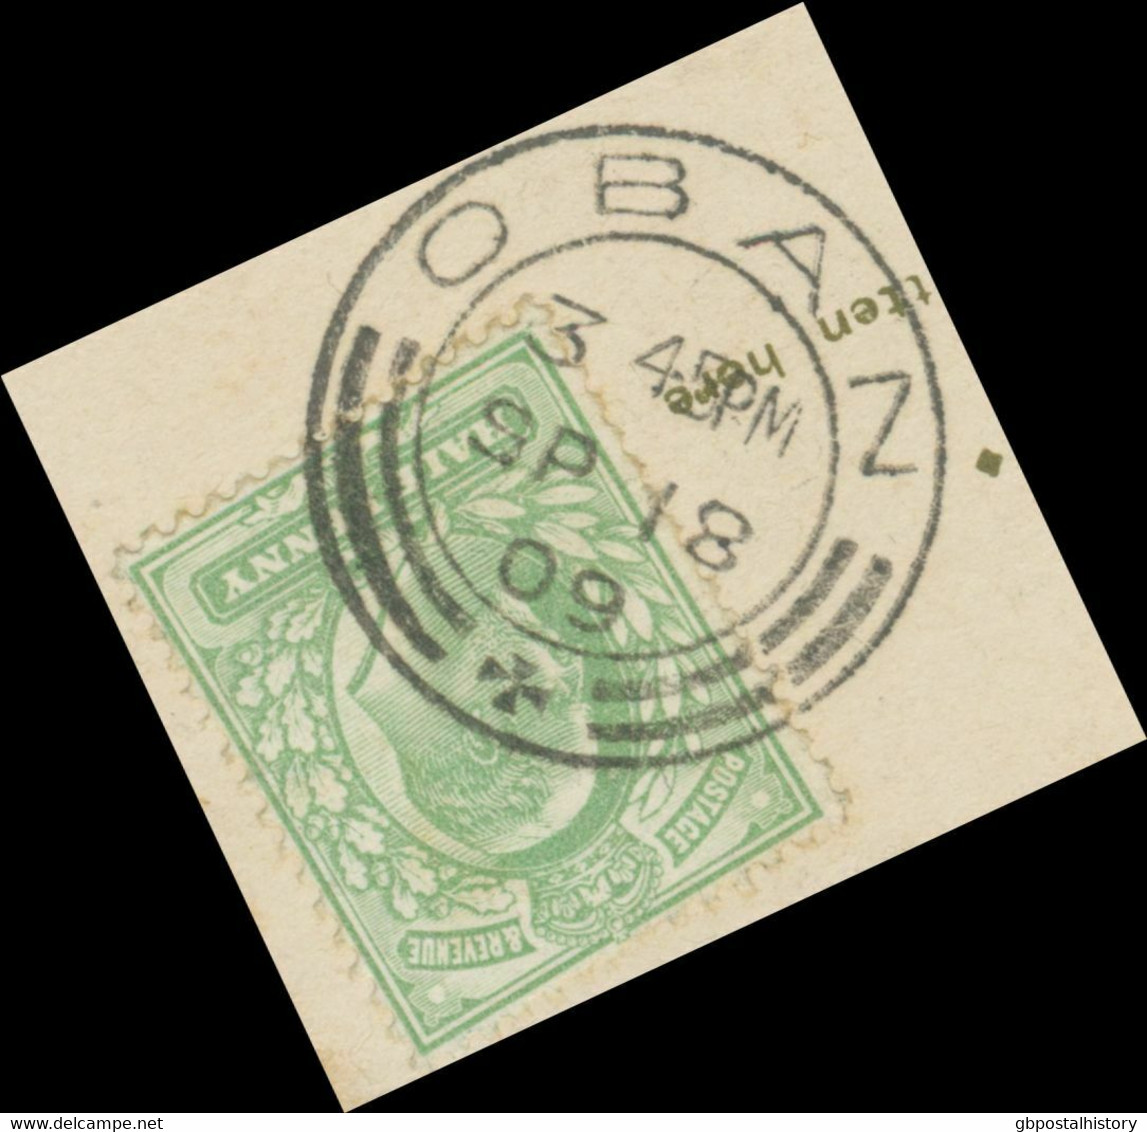 GB SCOTTIS VILLAGE POSTMARKS „OBAN“ Superb Rare Strike (25mm, Time Code „3 45PM“) Superb Postcard POSTMARK-ERROR - Schottland